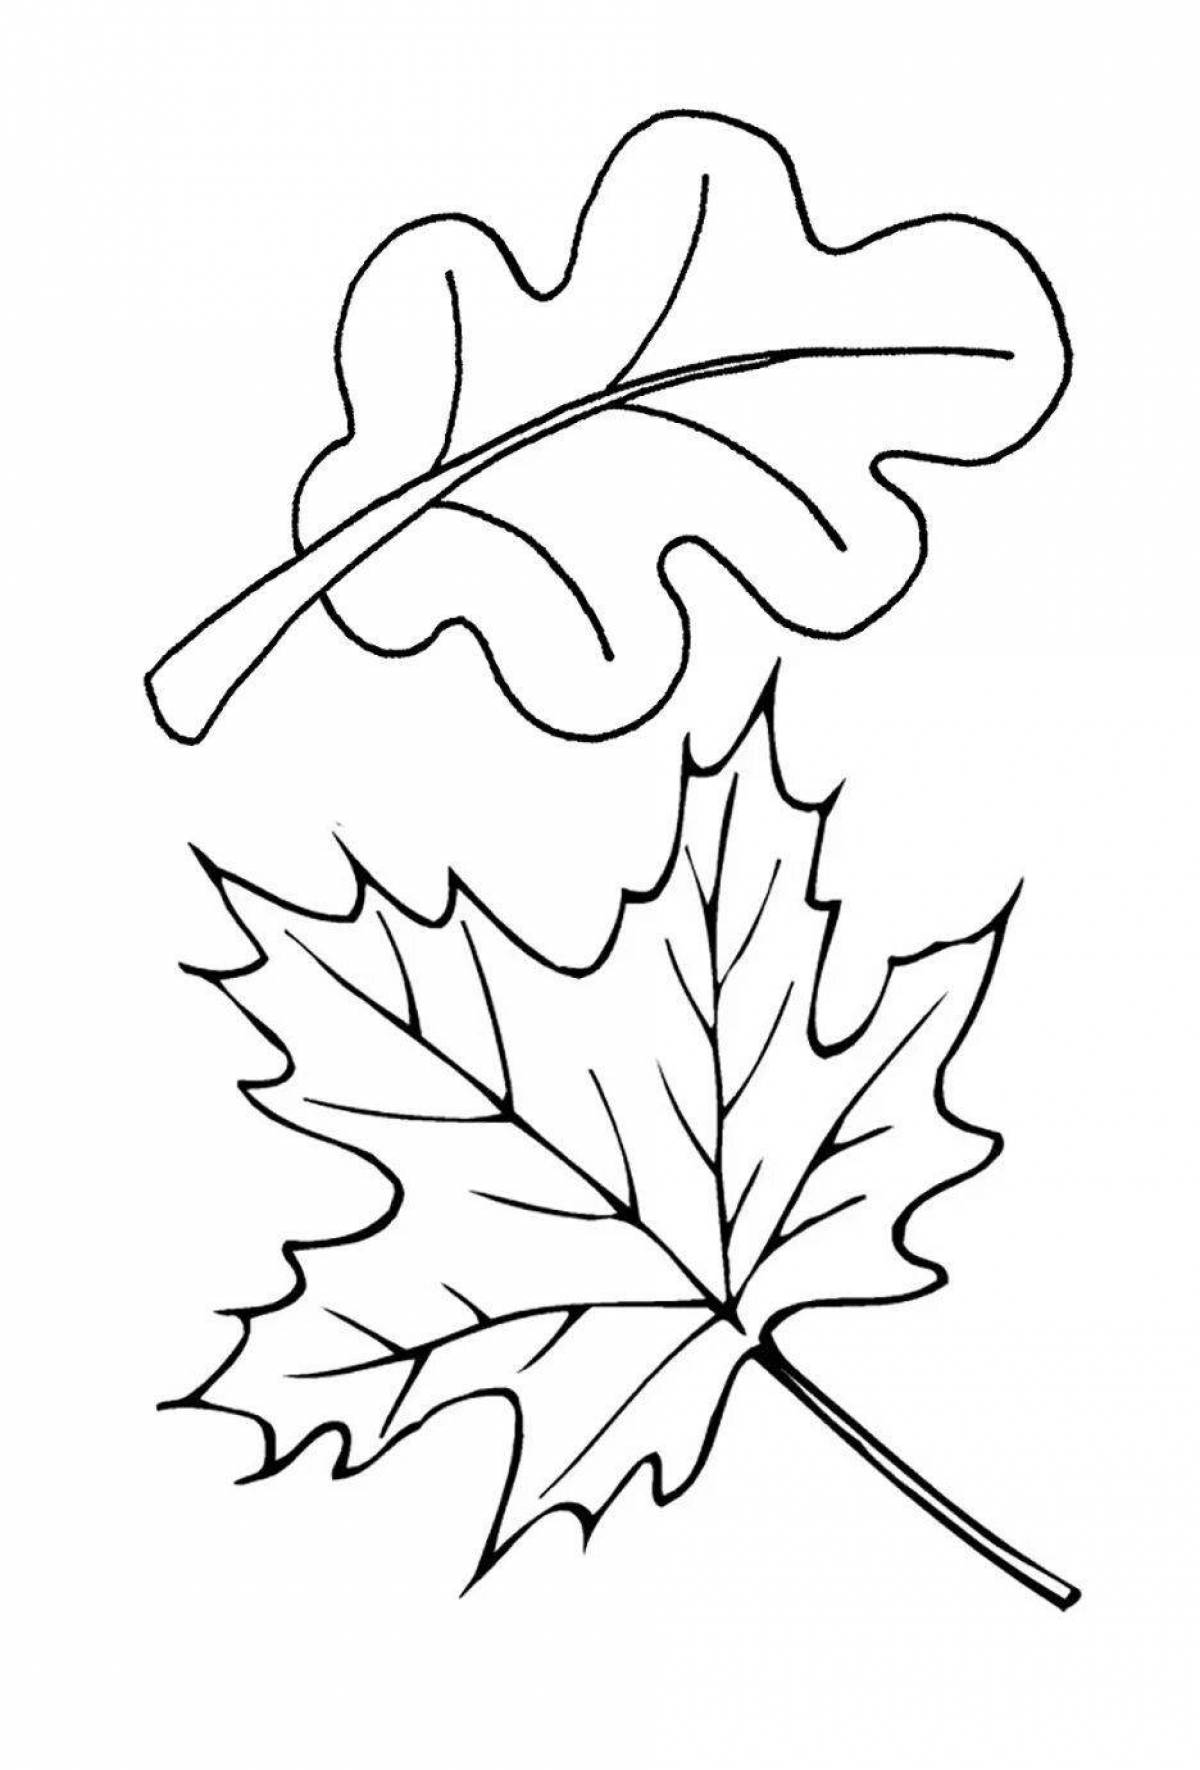 Maple leaf #4